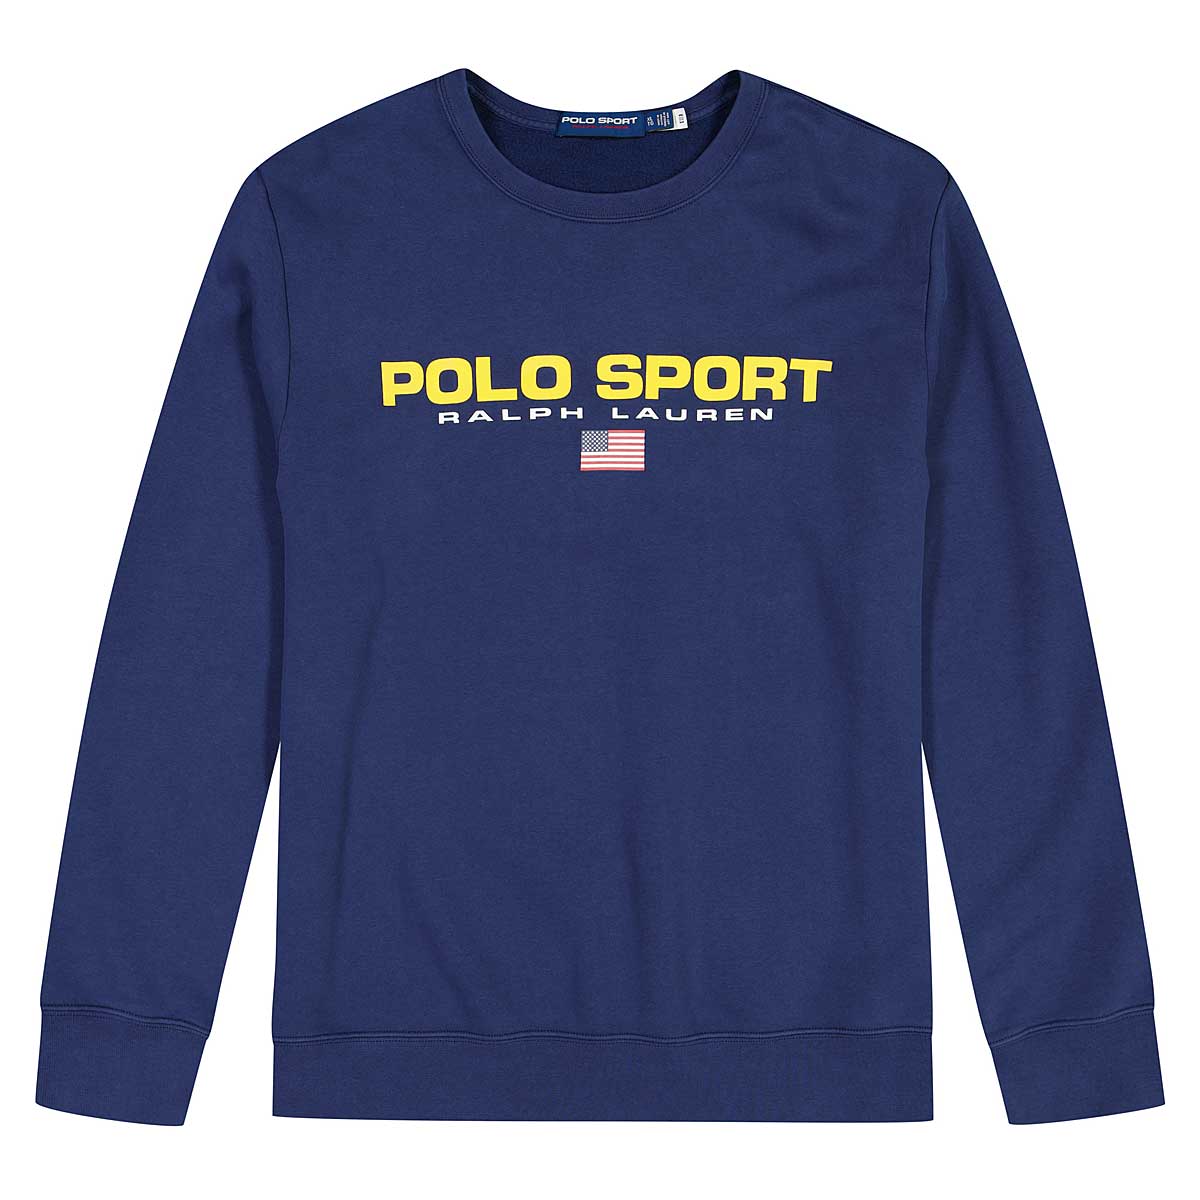 Polo Ralph Lauren Polo Sport Sweatshirt, Dark Cobalt